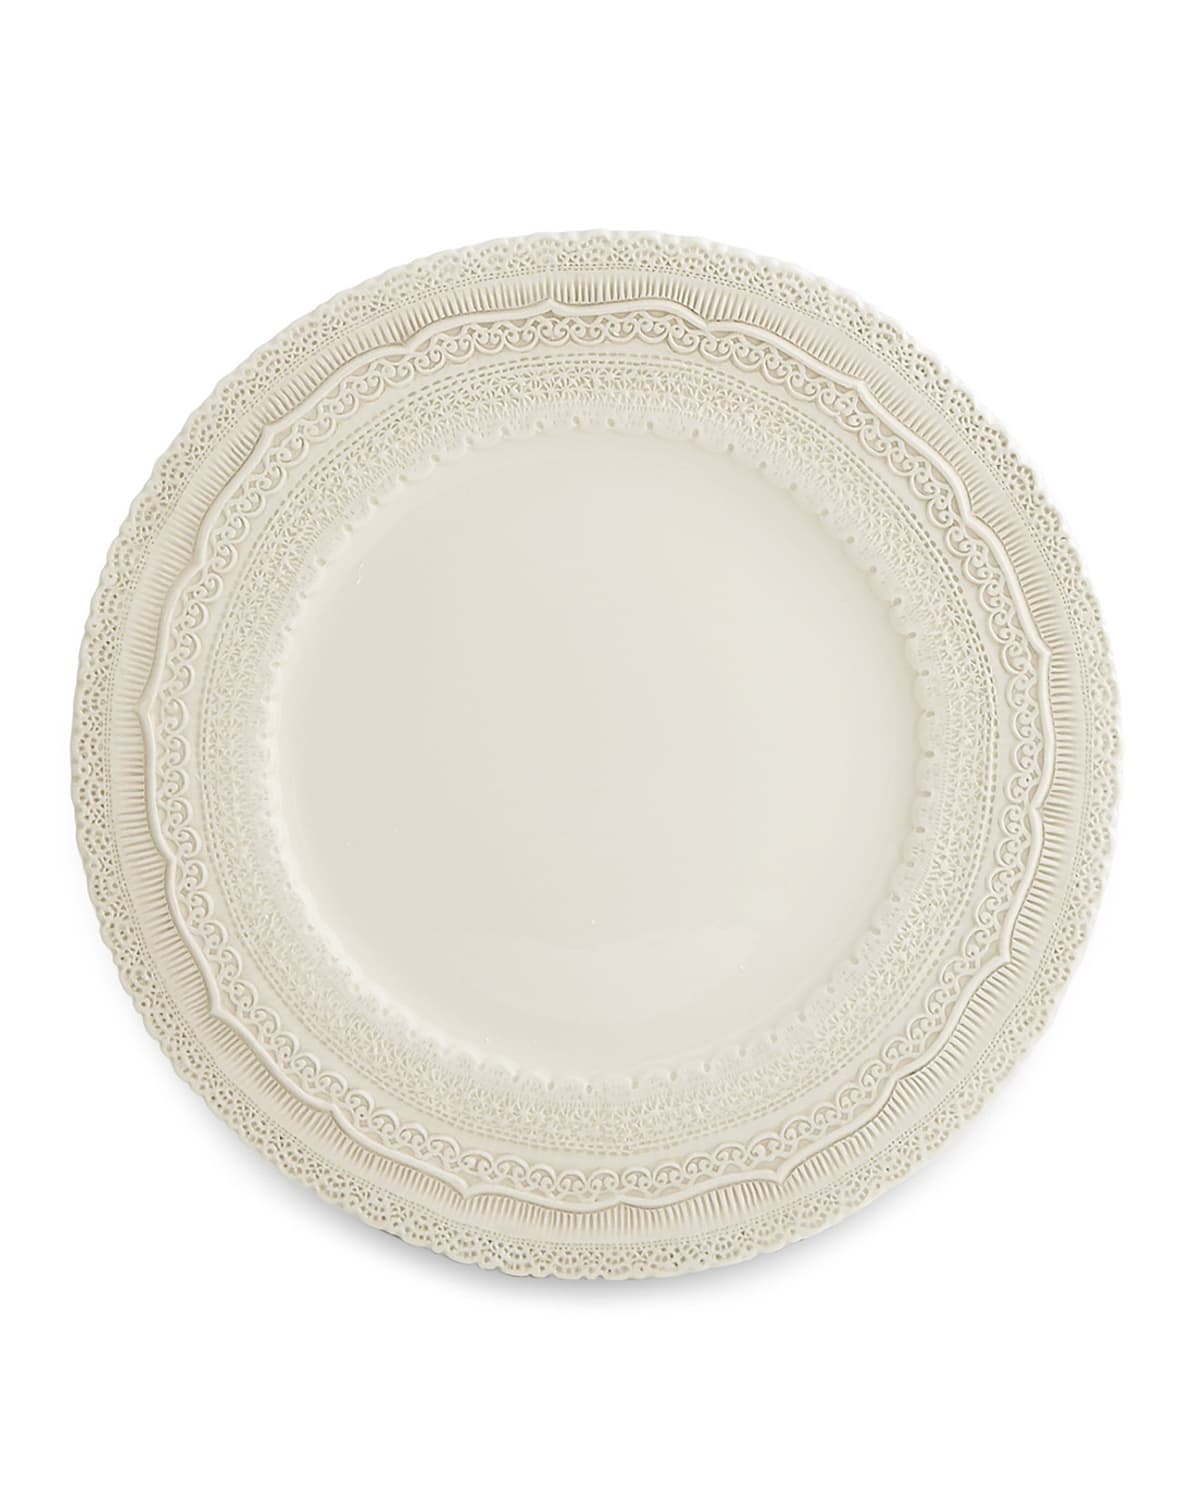 Arte Italica Finezza Cream Charger Plate In Neutral